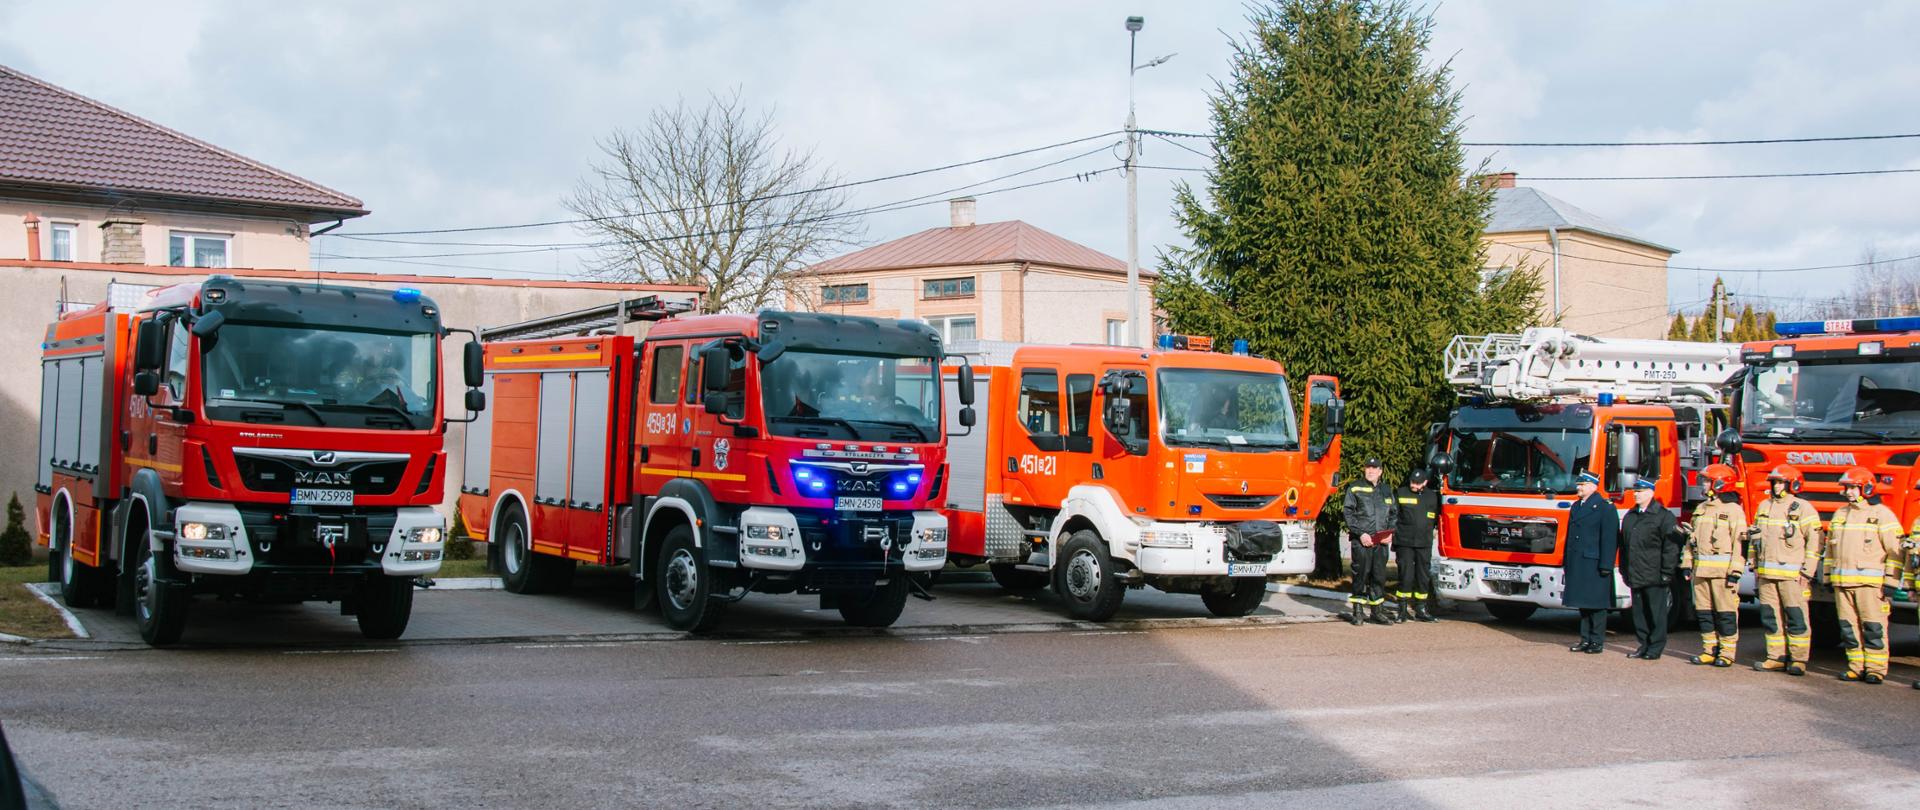 Nowe samochody pożarnicze dla strażaków w Mońkach, Trzciannem i Długołęce